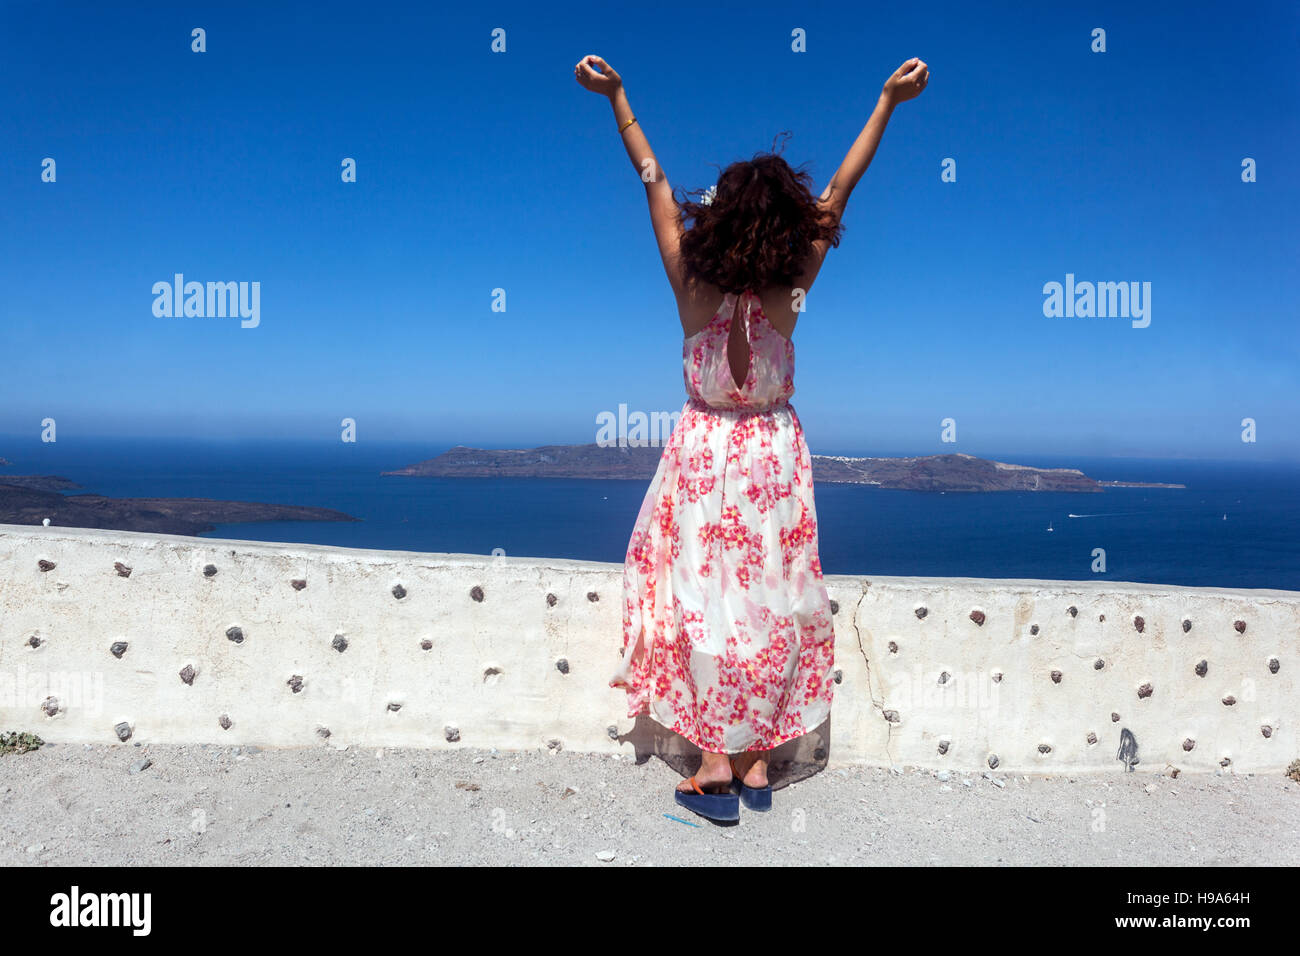 Una mujer de pie en una terraza sobre el mar con las manos elevadas y disfruta de la sensación de la brisa, Santorini turística Grecia atmósfera Foto de stock